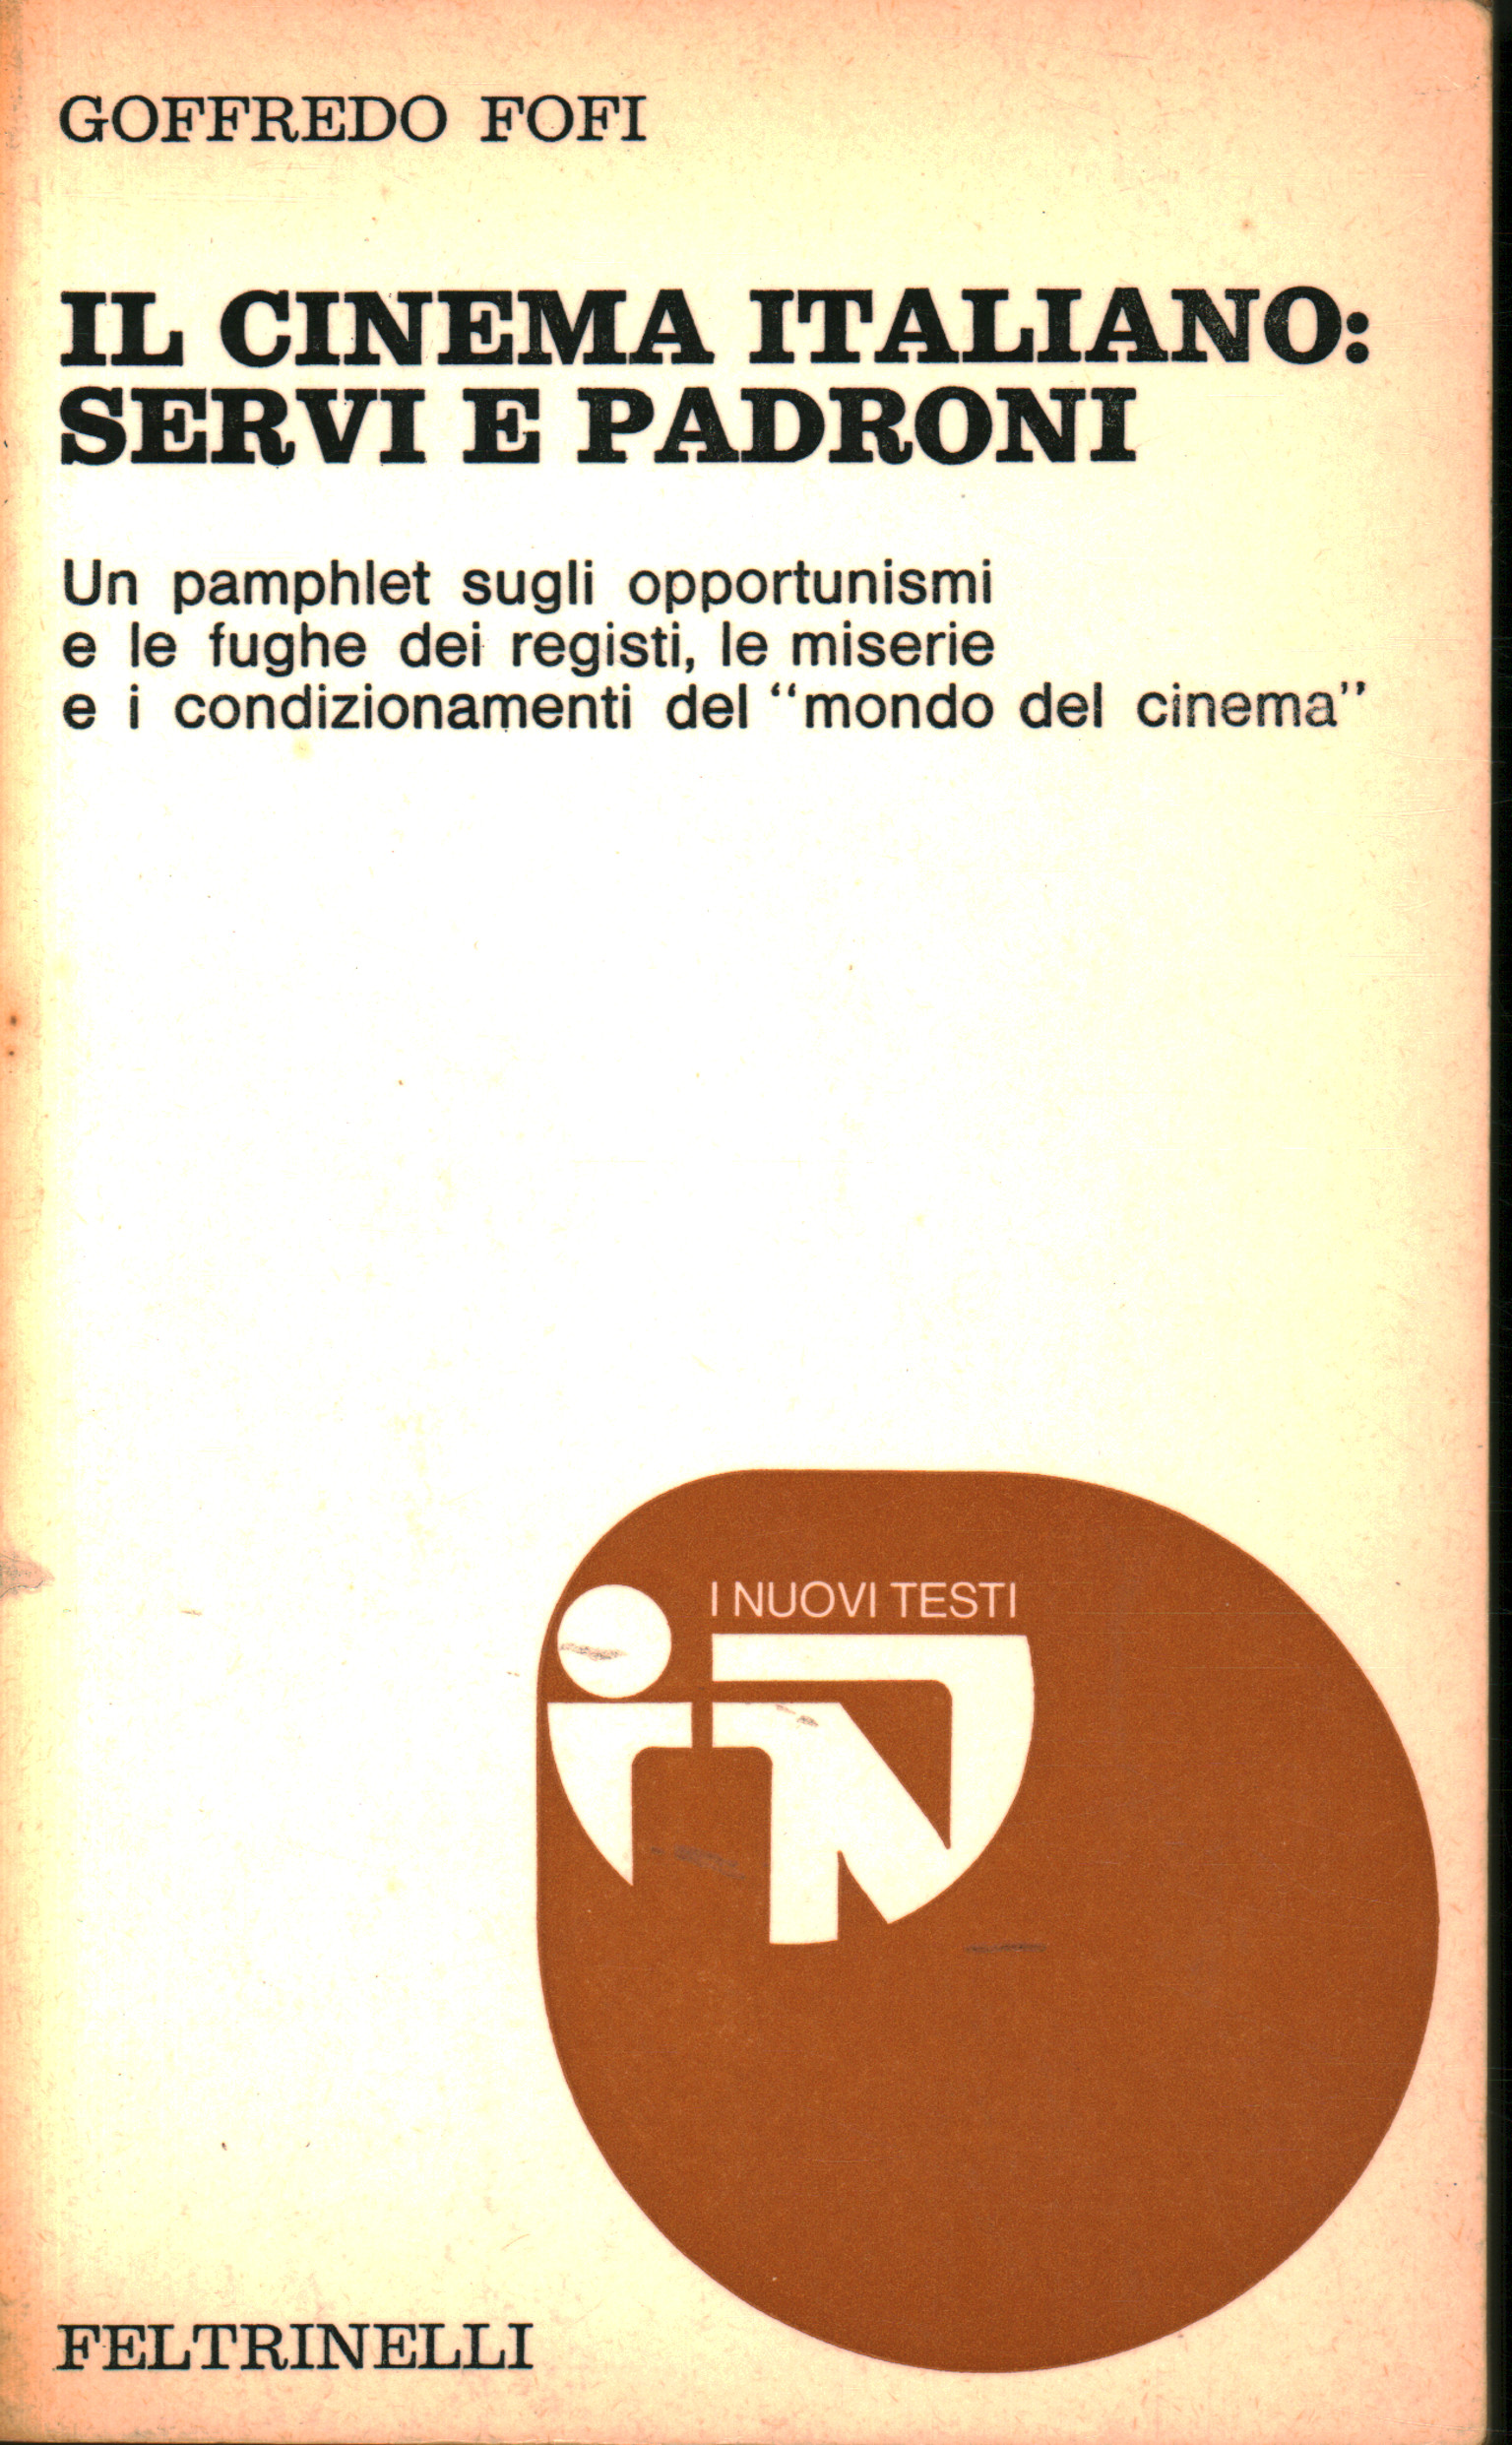 Il cinema italiano: servi e padroni, Goffredo Fofi